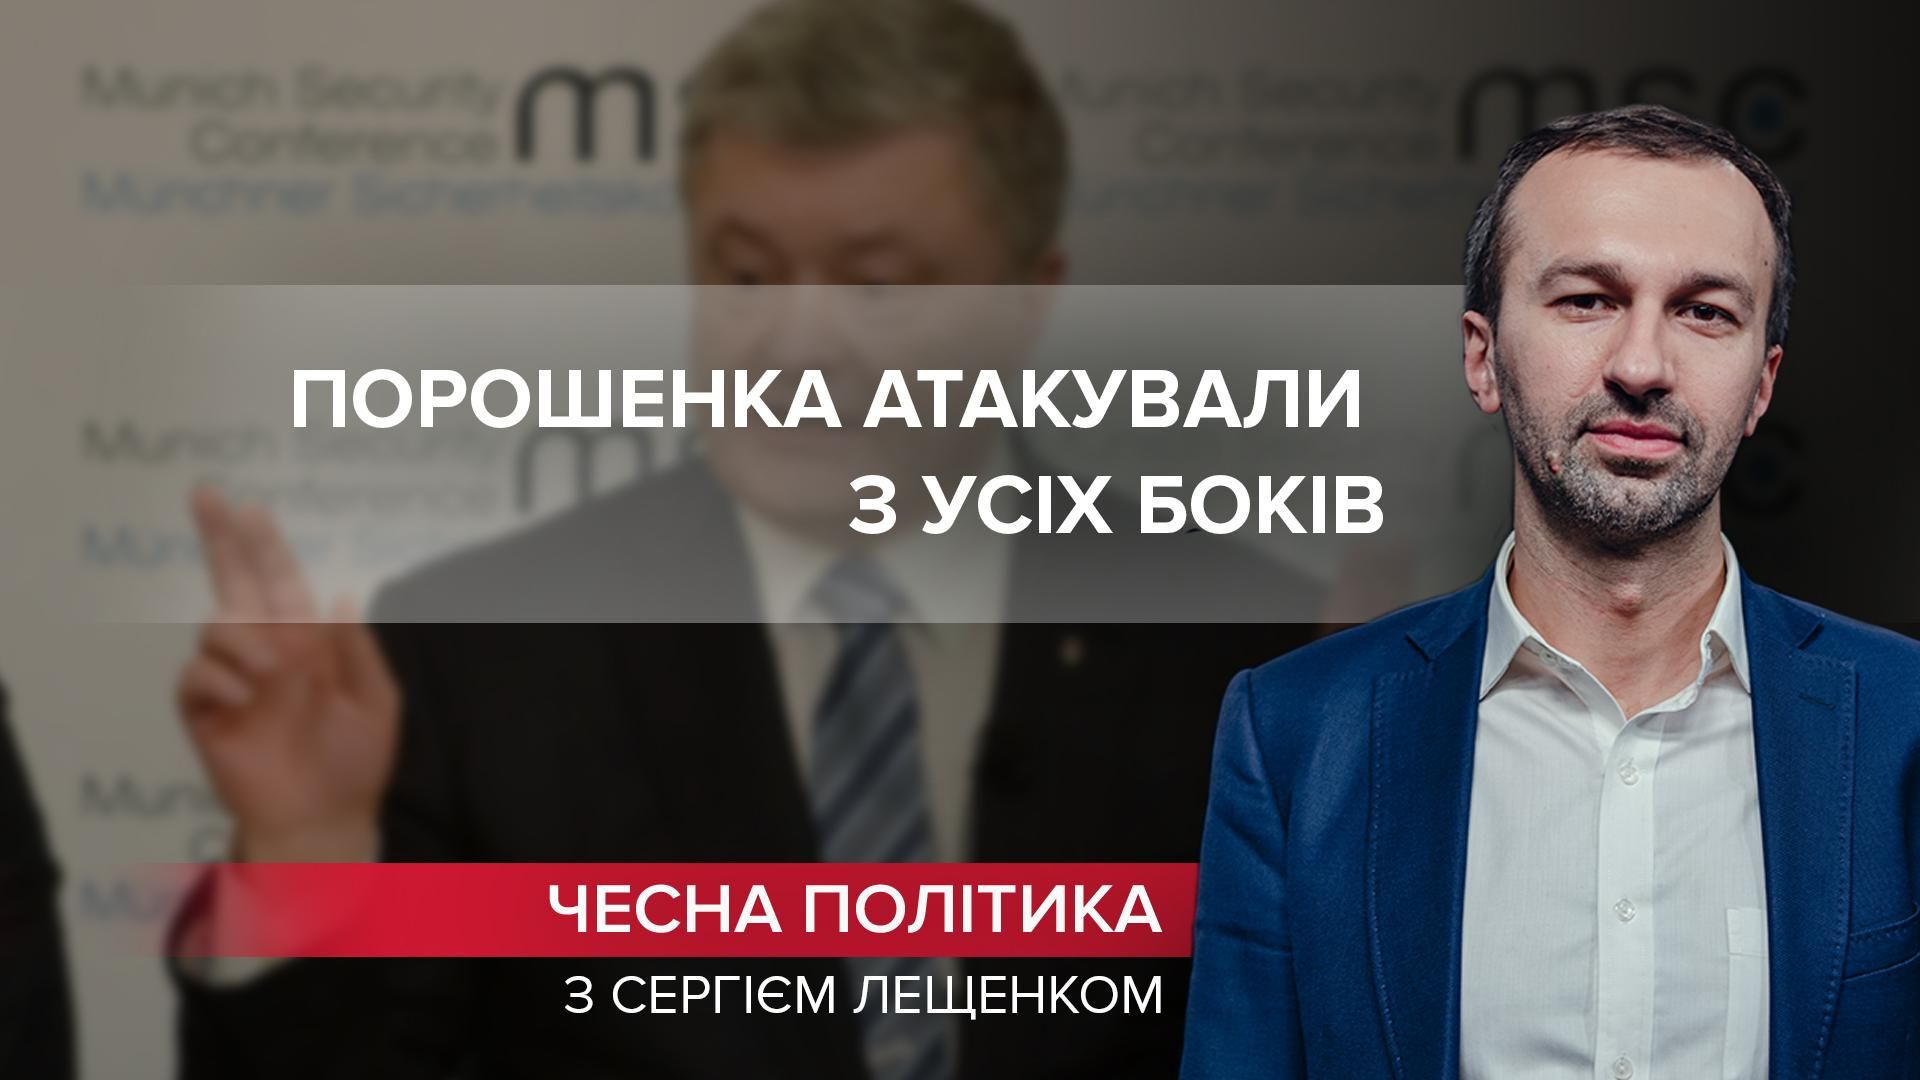 Черная полоса в жизни Порошенко только начинается - Украина новости - 24 Канал